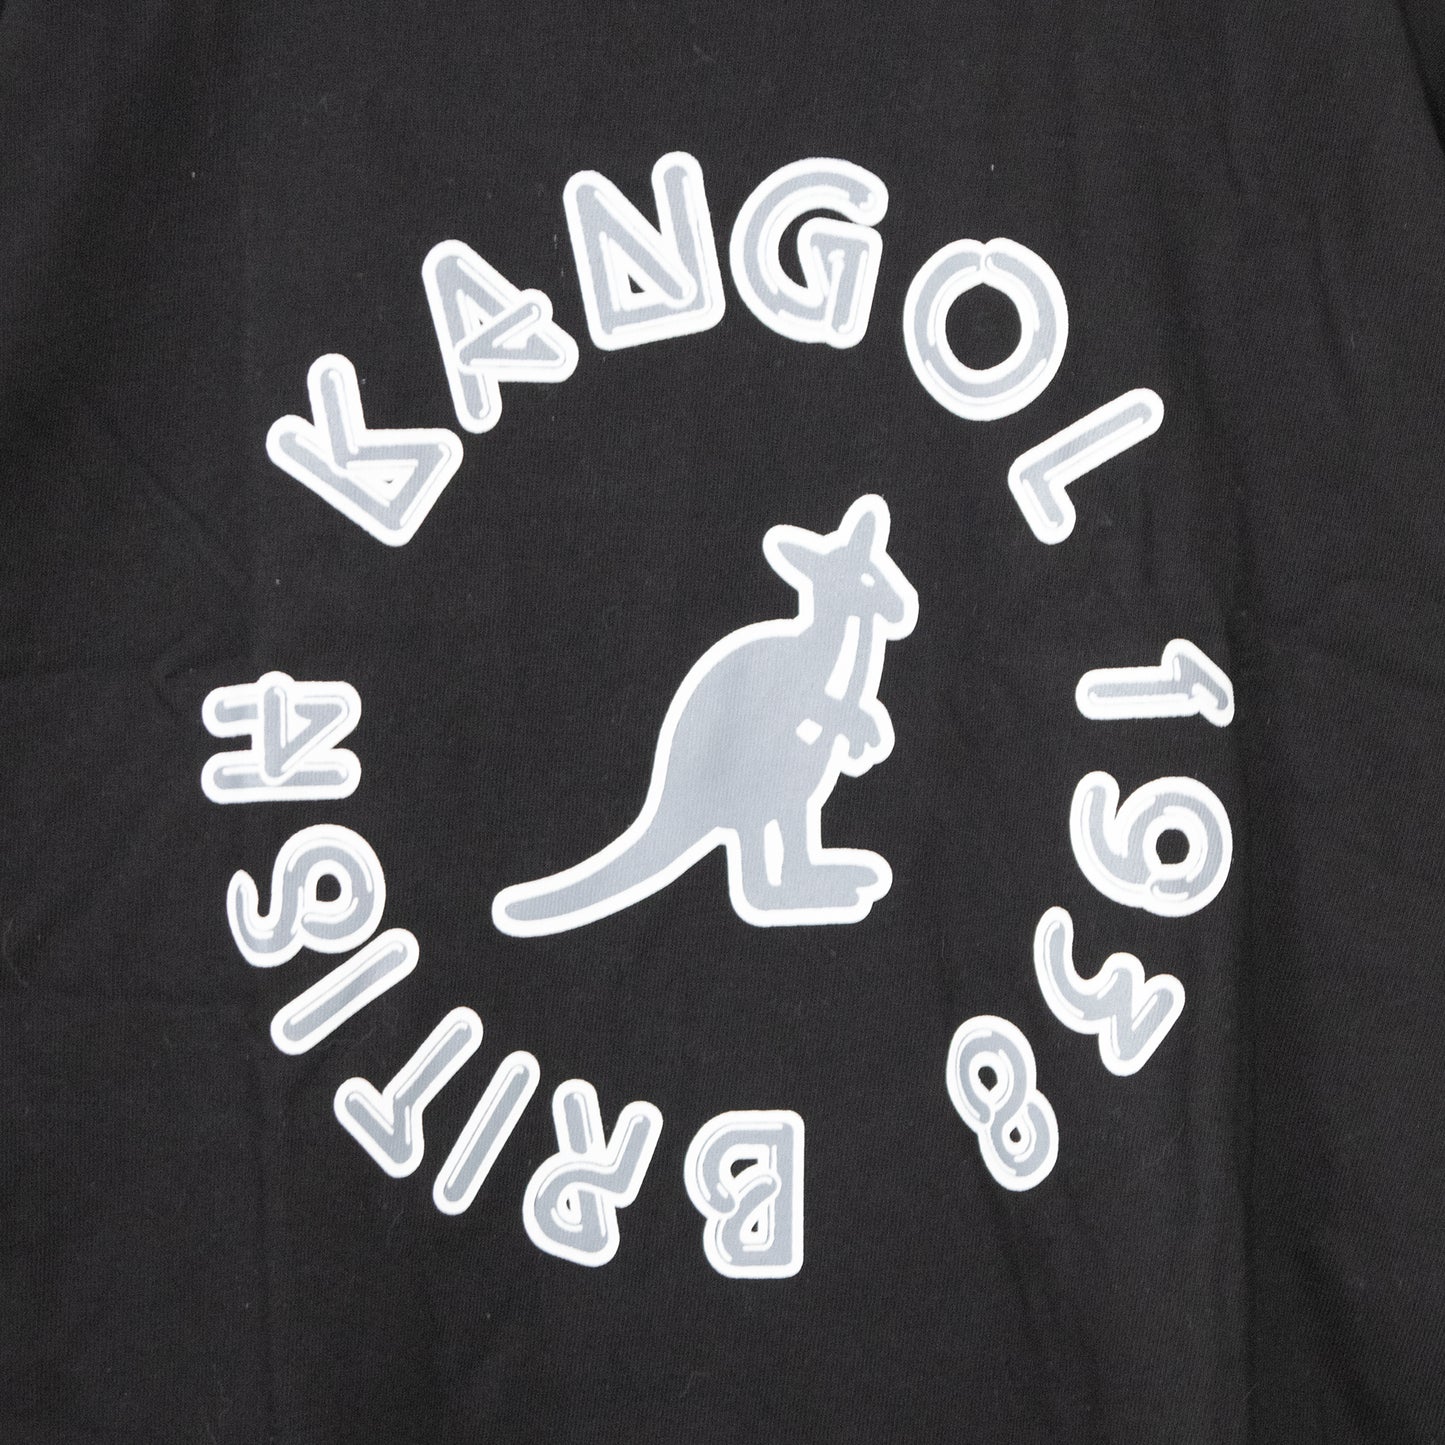 KANGOL Music Circle 半袖Tシャツ BLACK